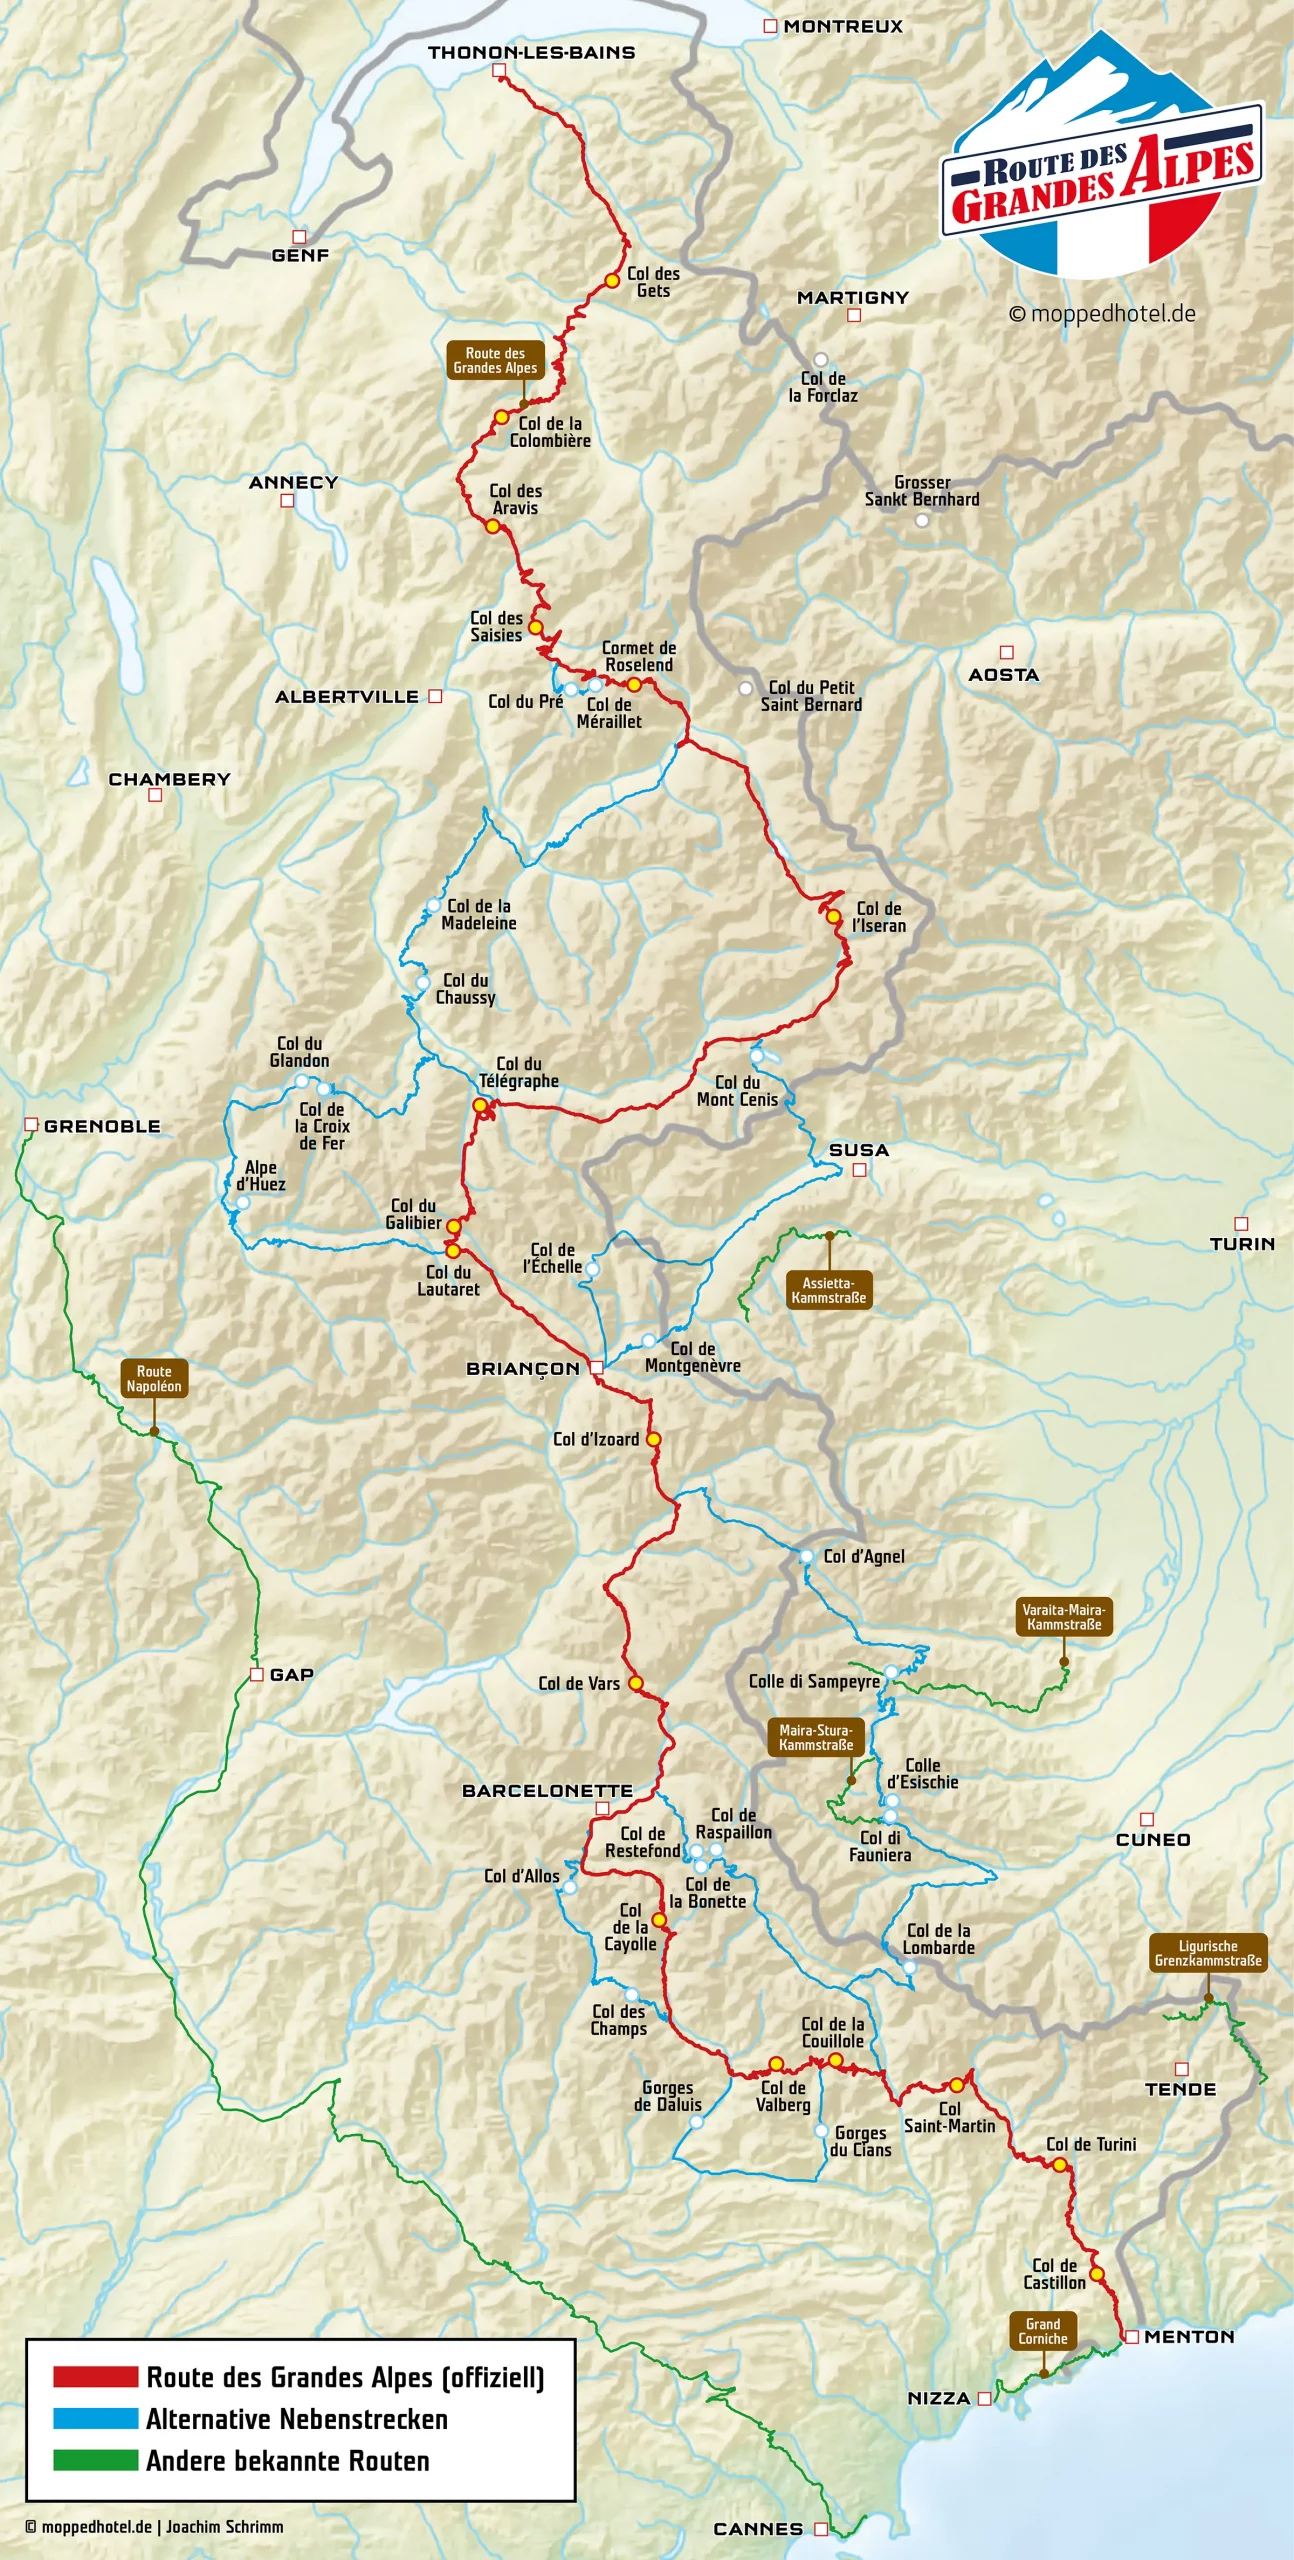 Karte der Route des Grandes Alpes mit alternativen Nebenstrecken